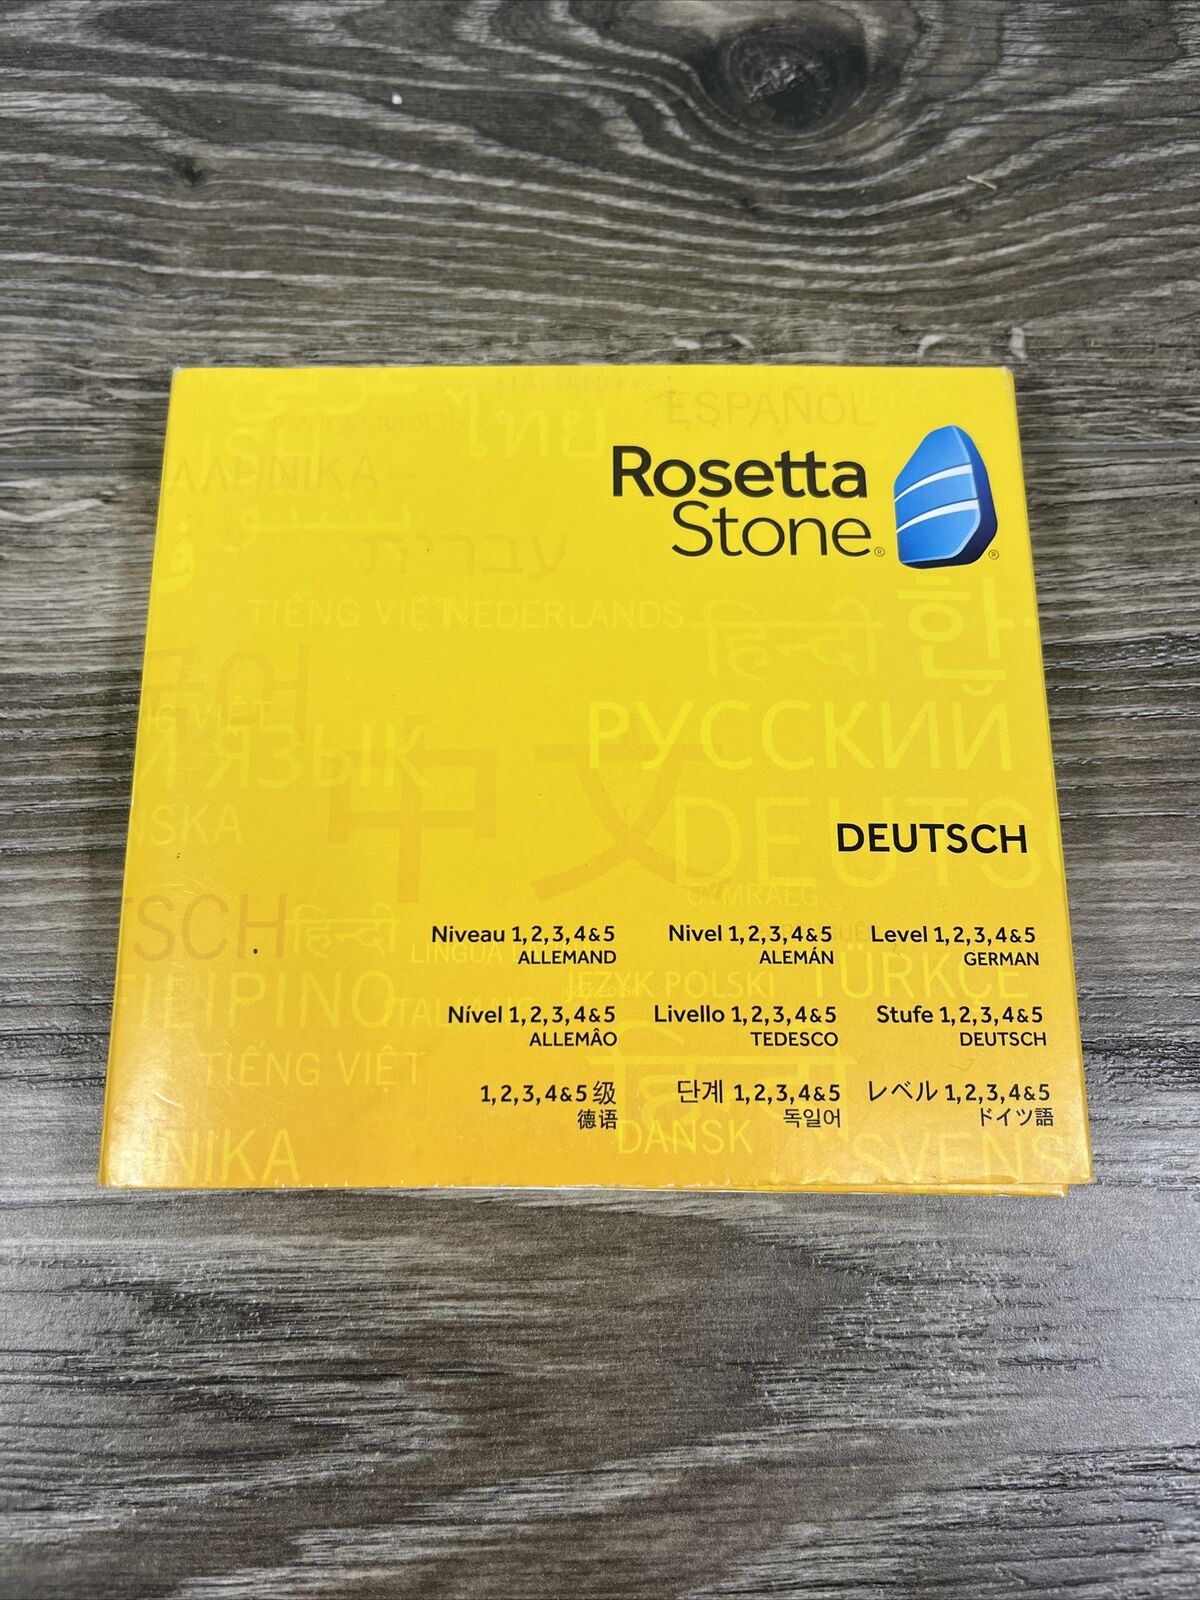 Rosetta Stone German Version 5 Deutsch  Levels 1, 2, 3, 4, and 5